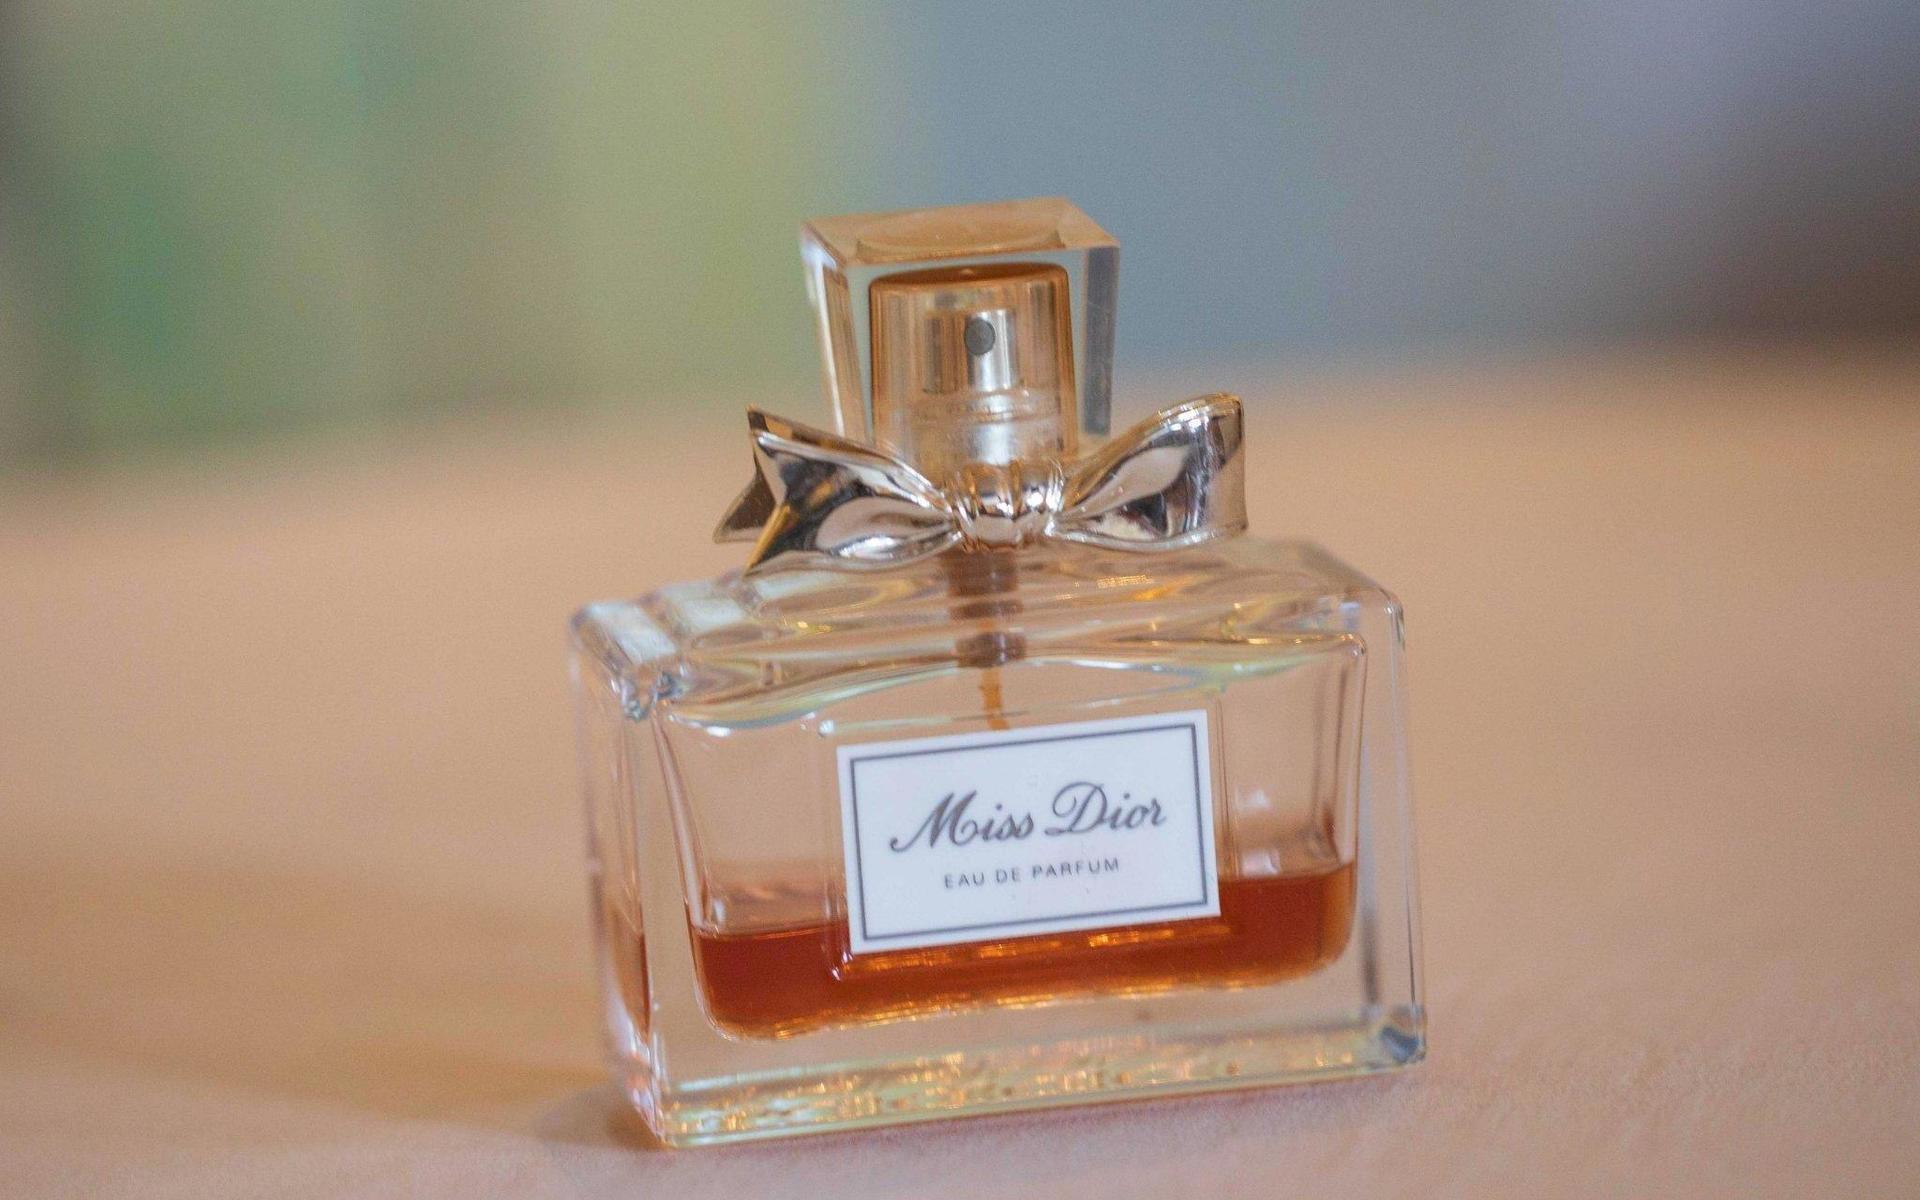 Miss Dior eau de parfum. 15-20 ml finns kvar i flaskan, enligt annonsen.